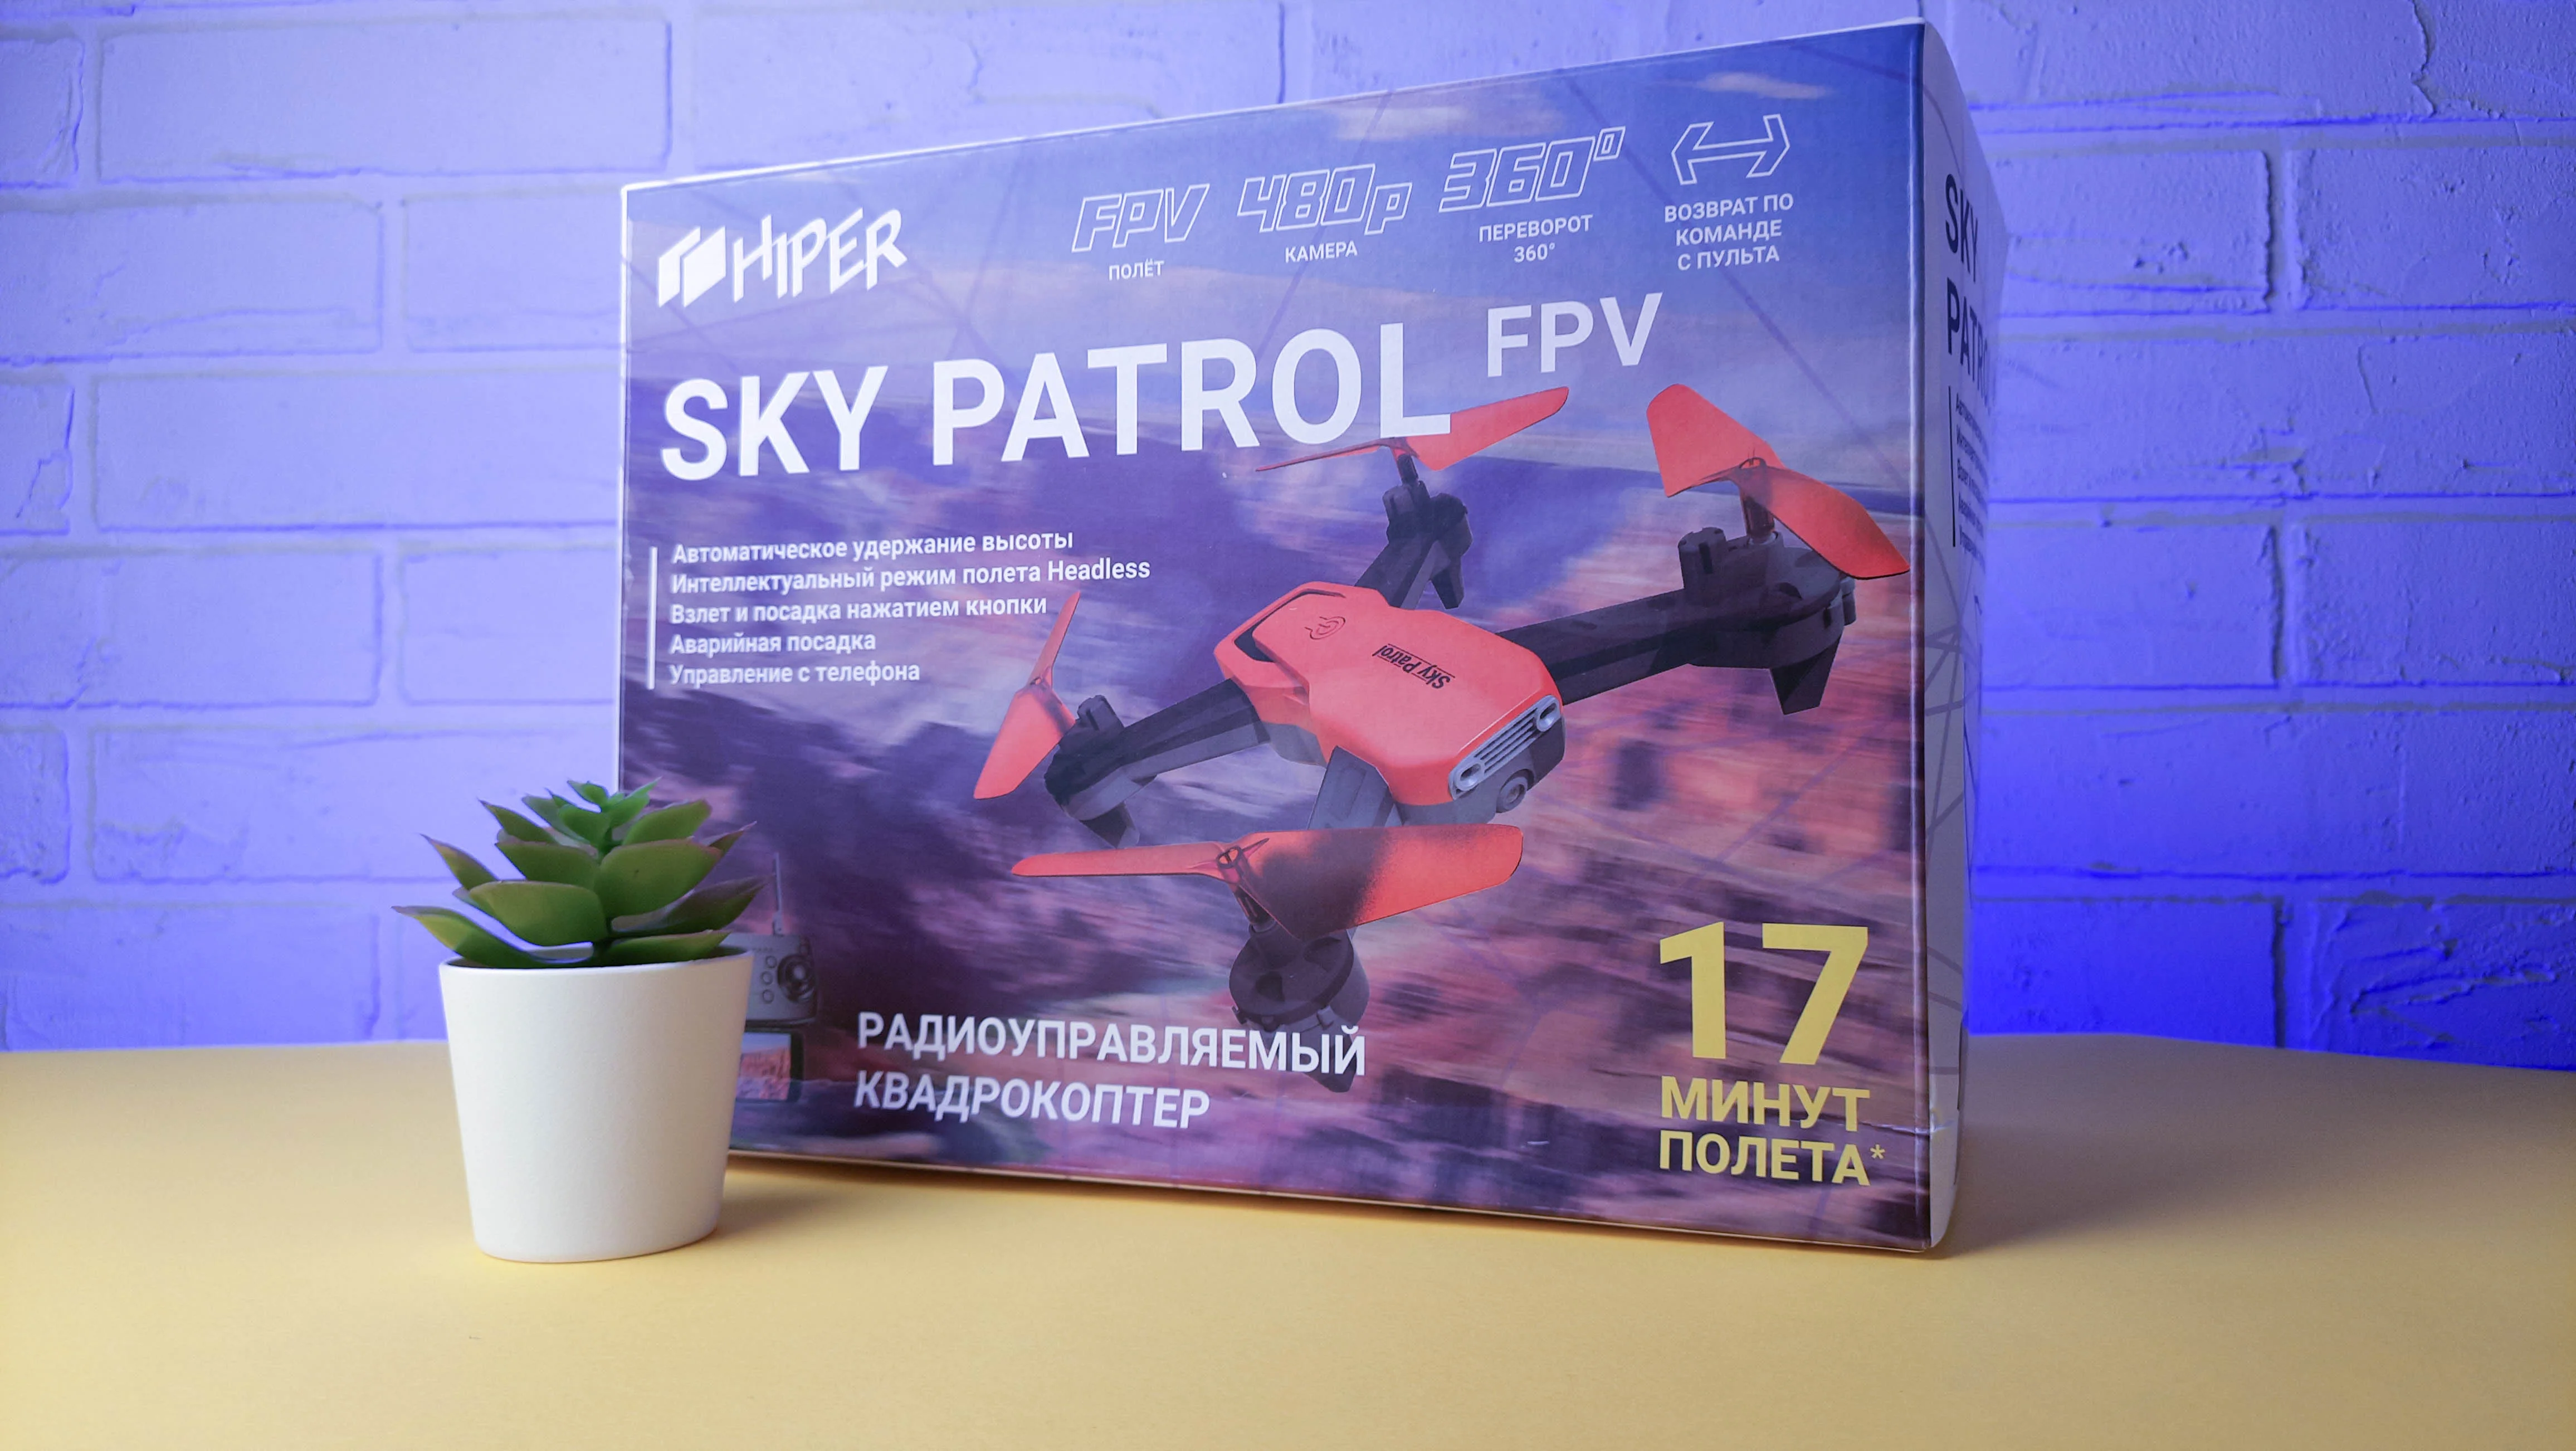 Обзор Hiper Sky Patrol FPV: что умеет бюджетный квадрокоптер для начинающих - фото 10